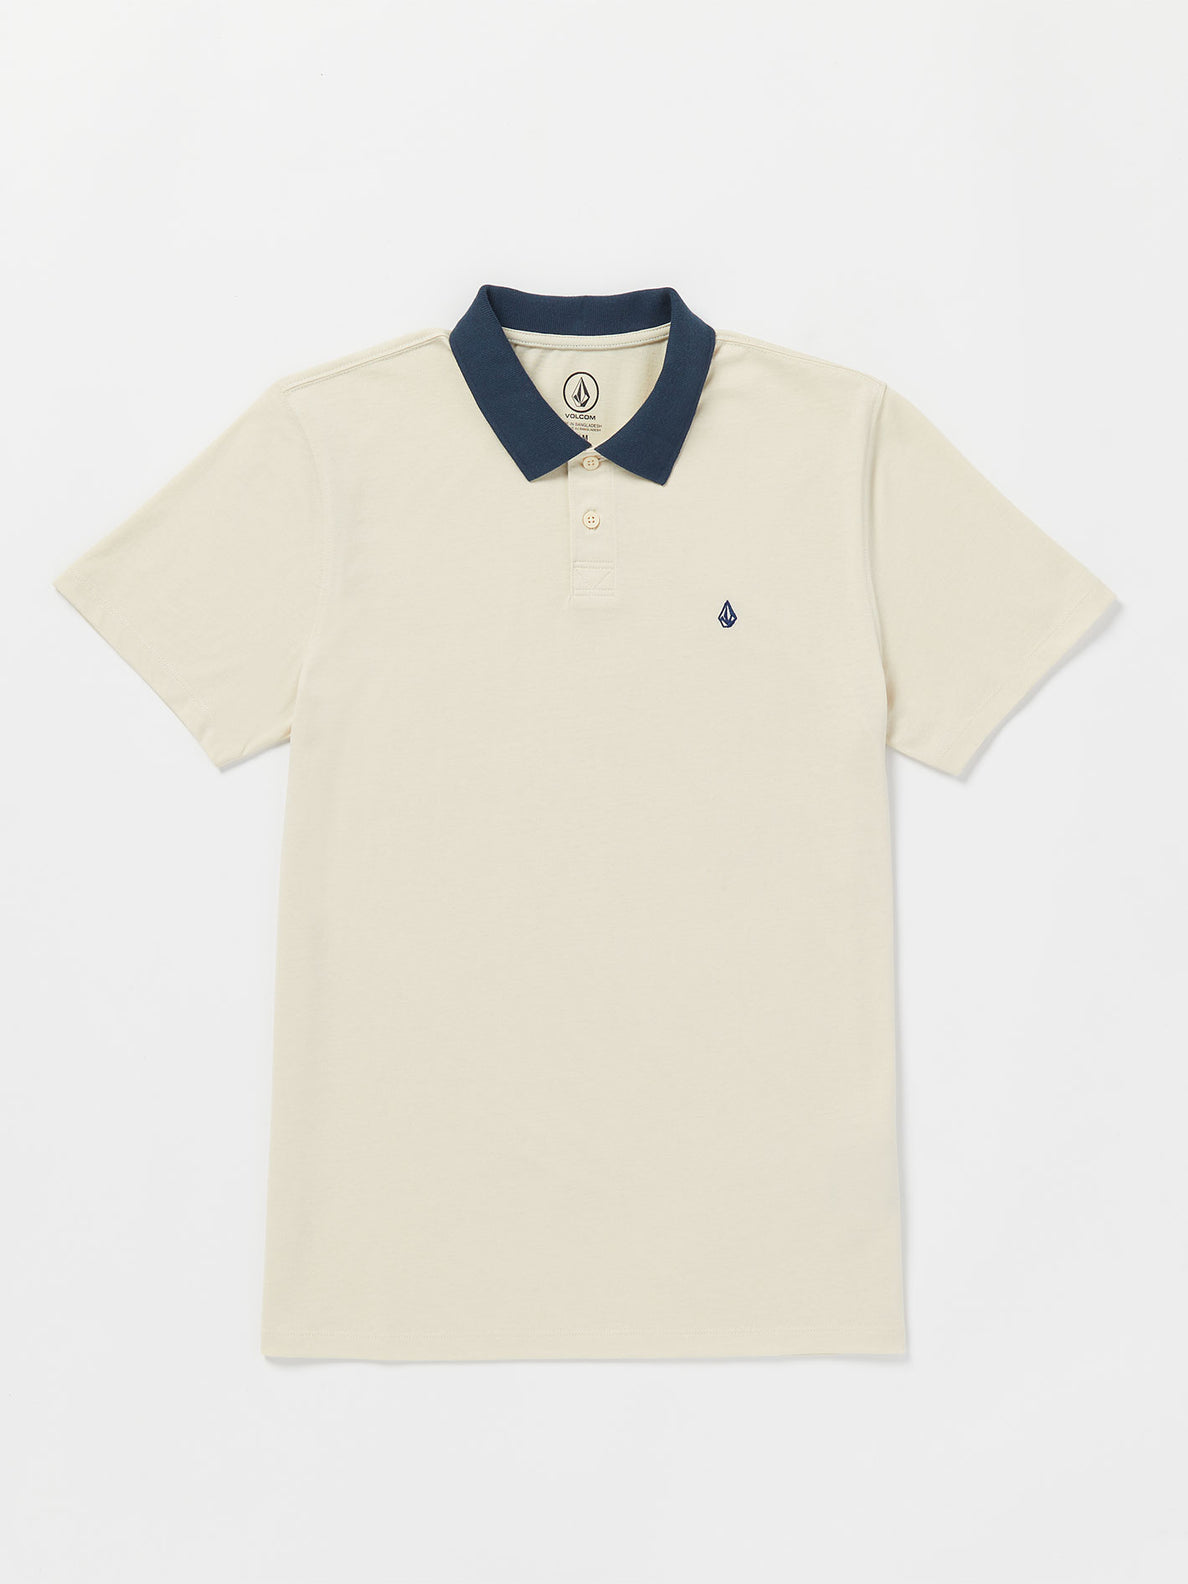 Middler Polo Short Sleeve Shirt - White Flash